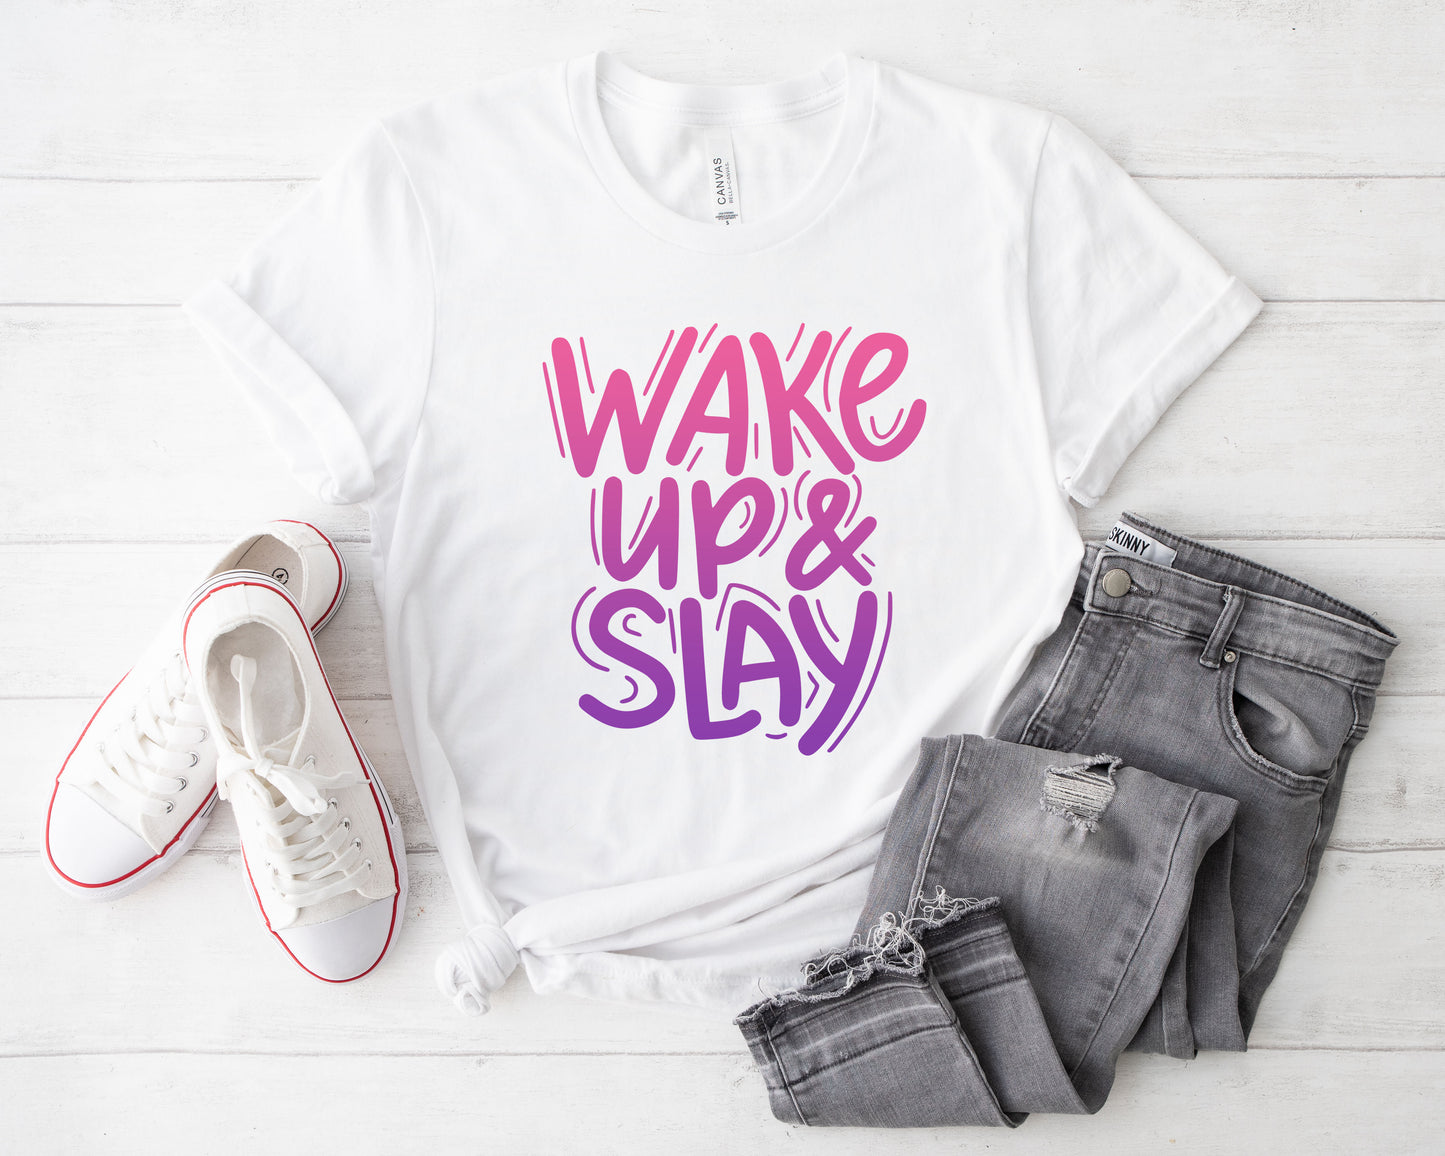 Wake Up & Slay Unisex T-Shirt